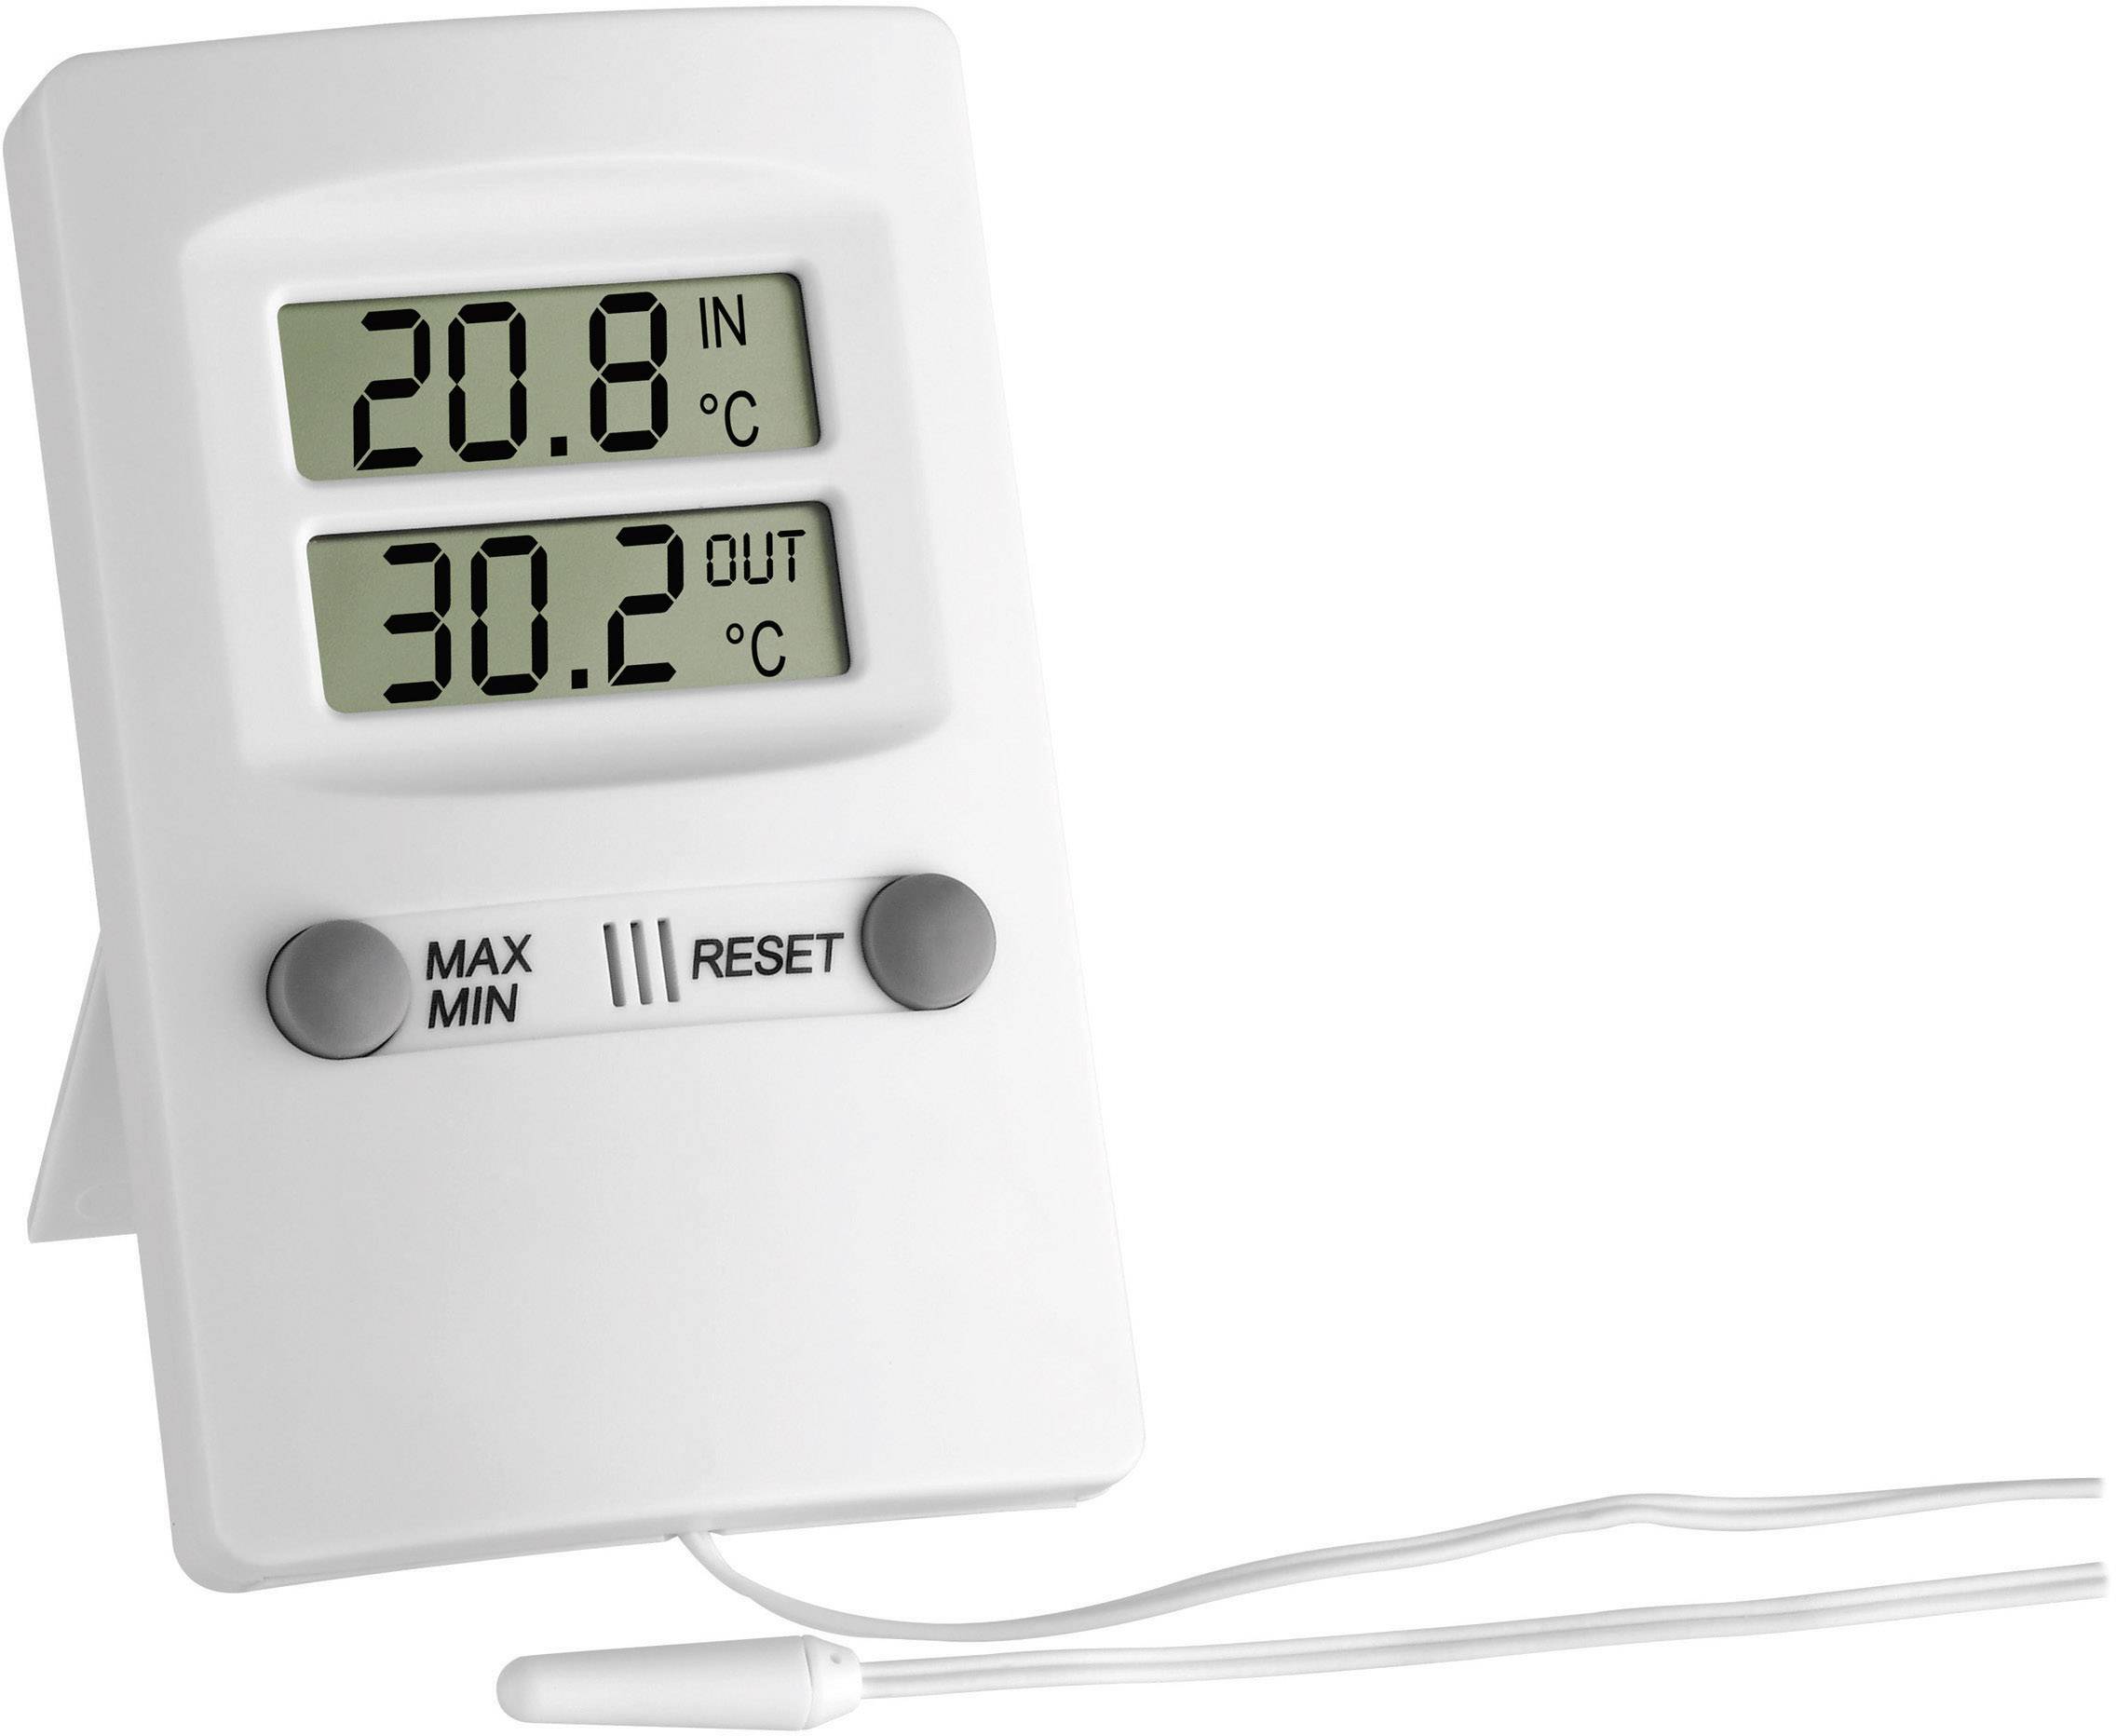 TFA Dostmann 30.1062.01 Thermomètre de cuisine affichage en °C